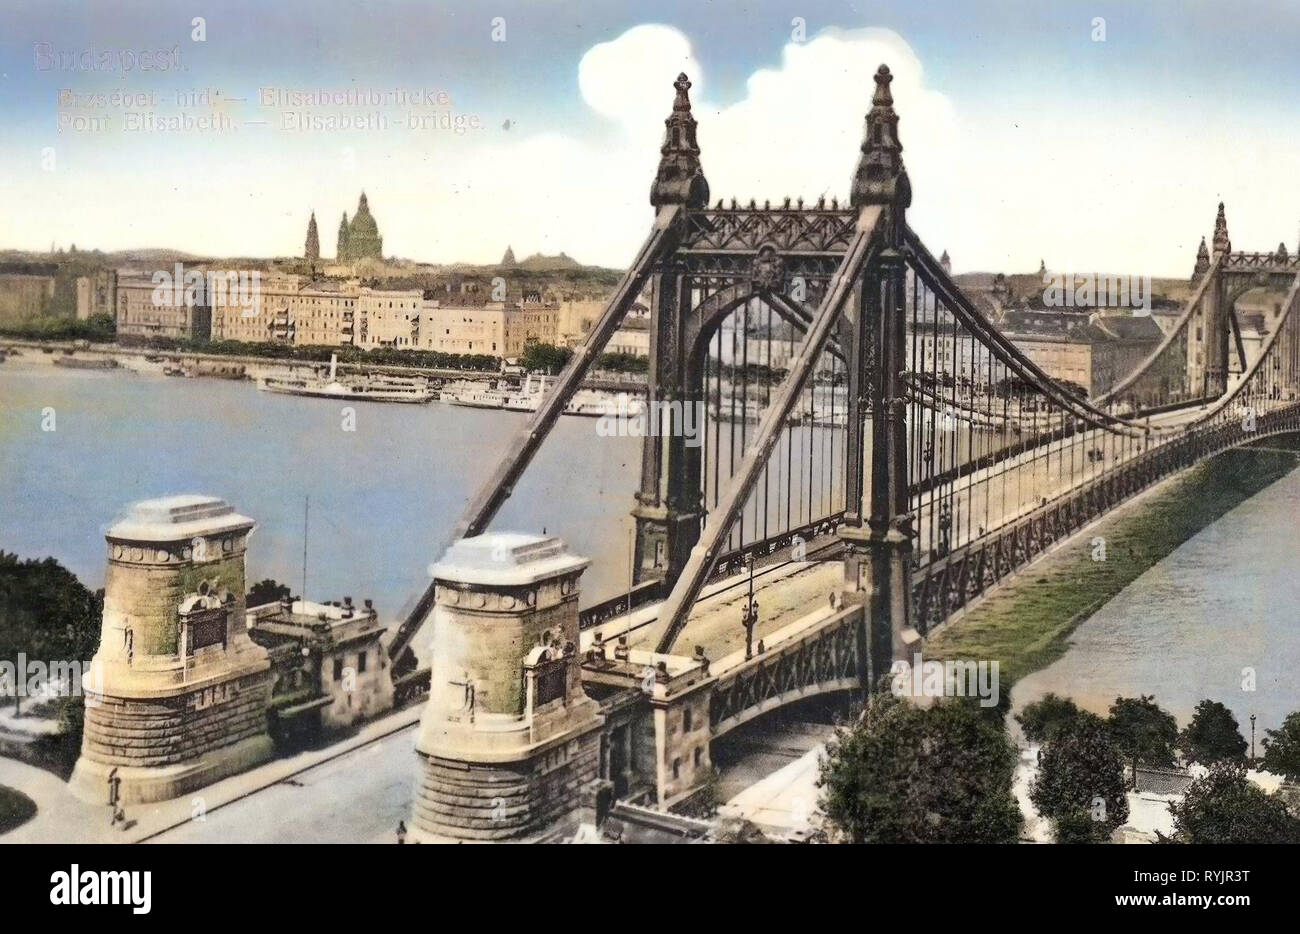 Images historiques du pont Elisabeth, Budapest, texte allemand, 1911, Elisabethbrücke, Hongrie Banque D'Images